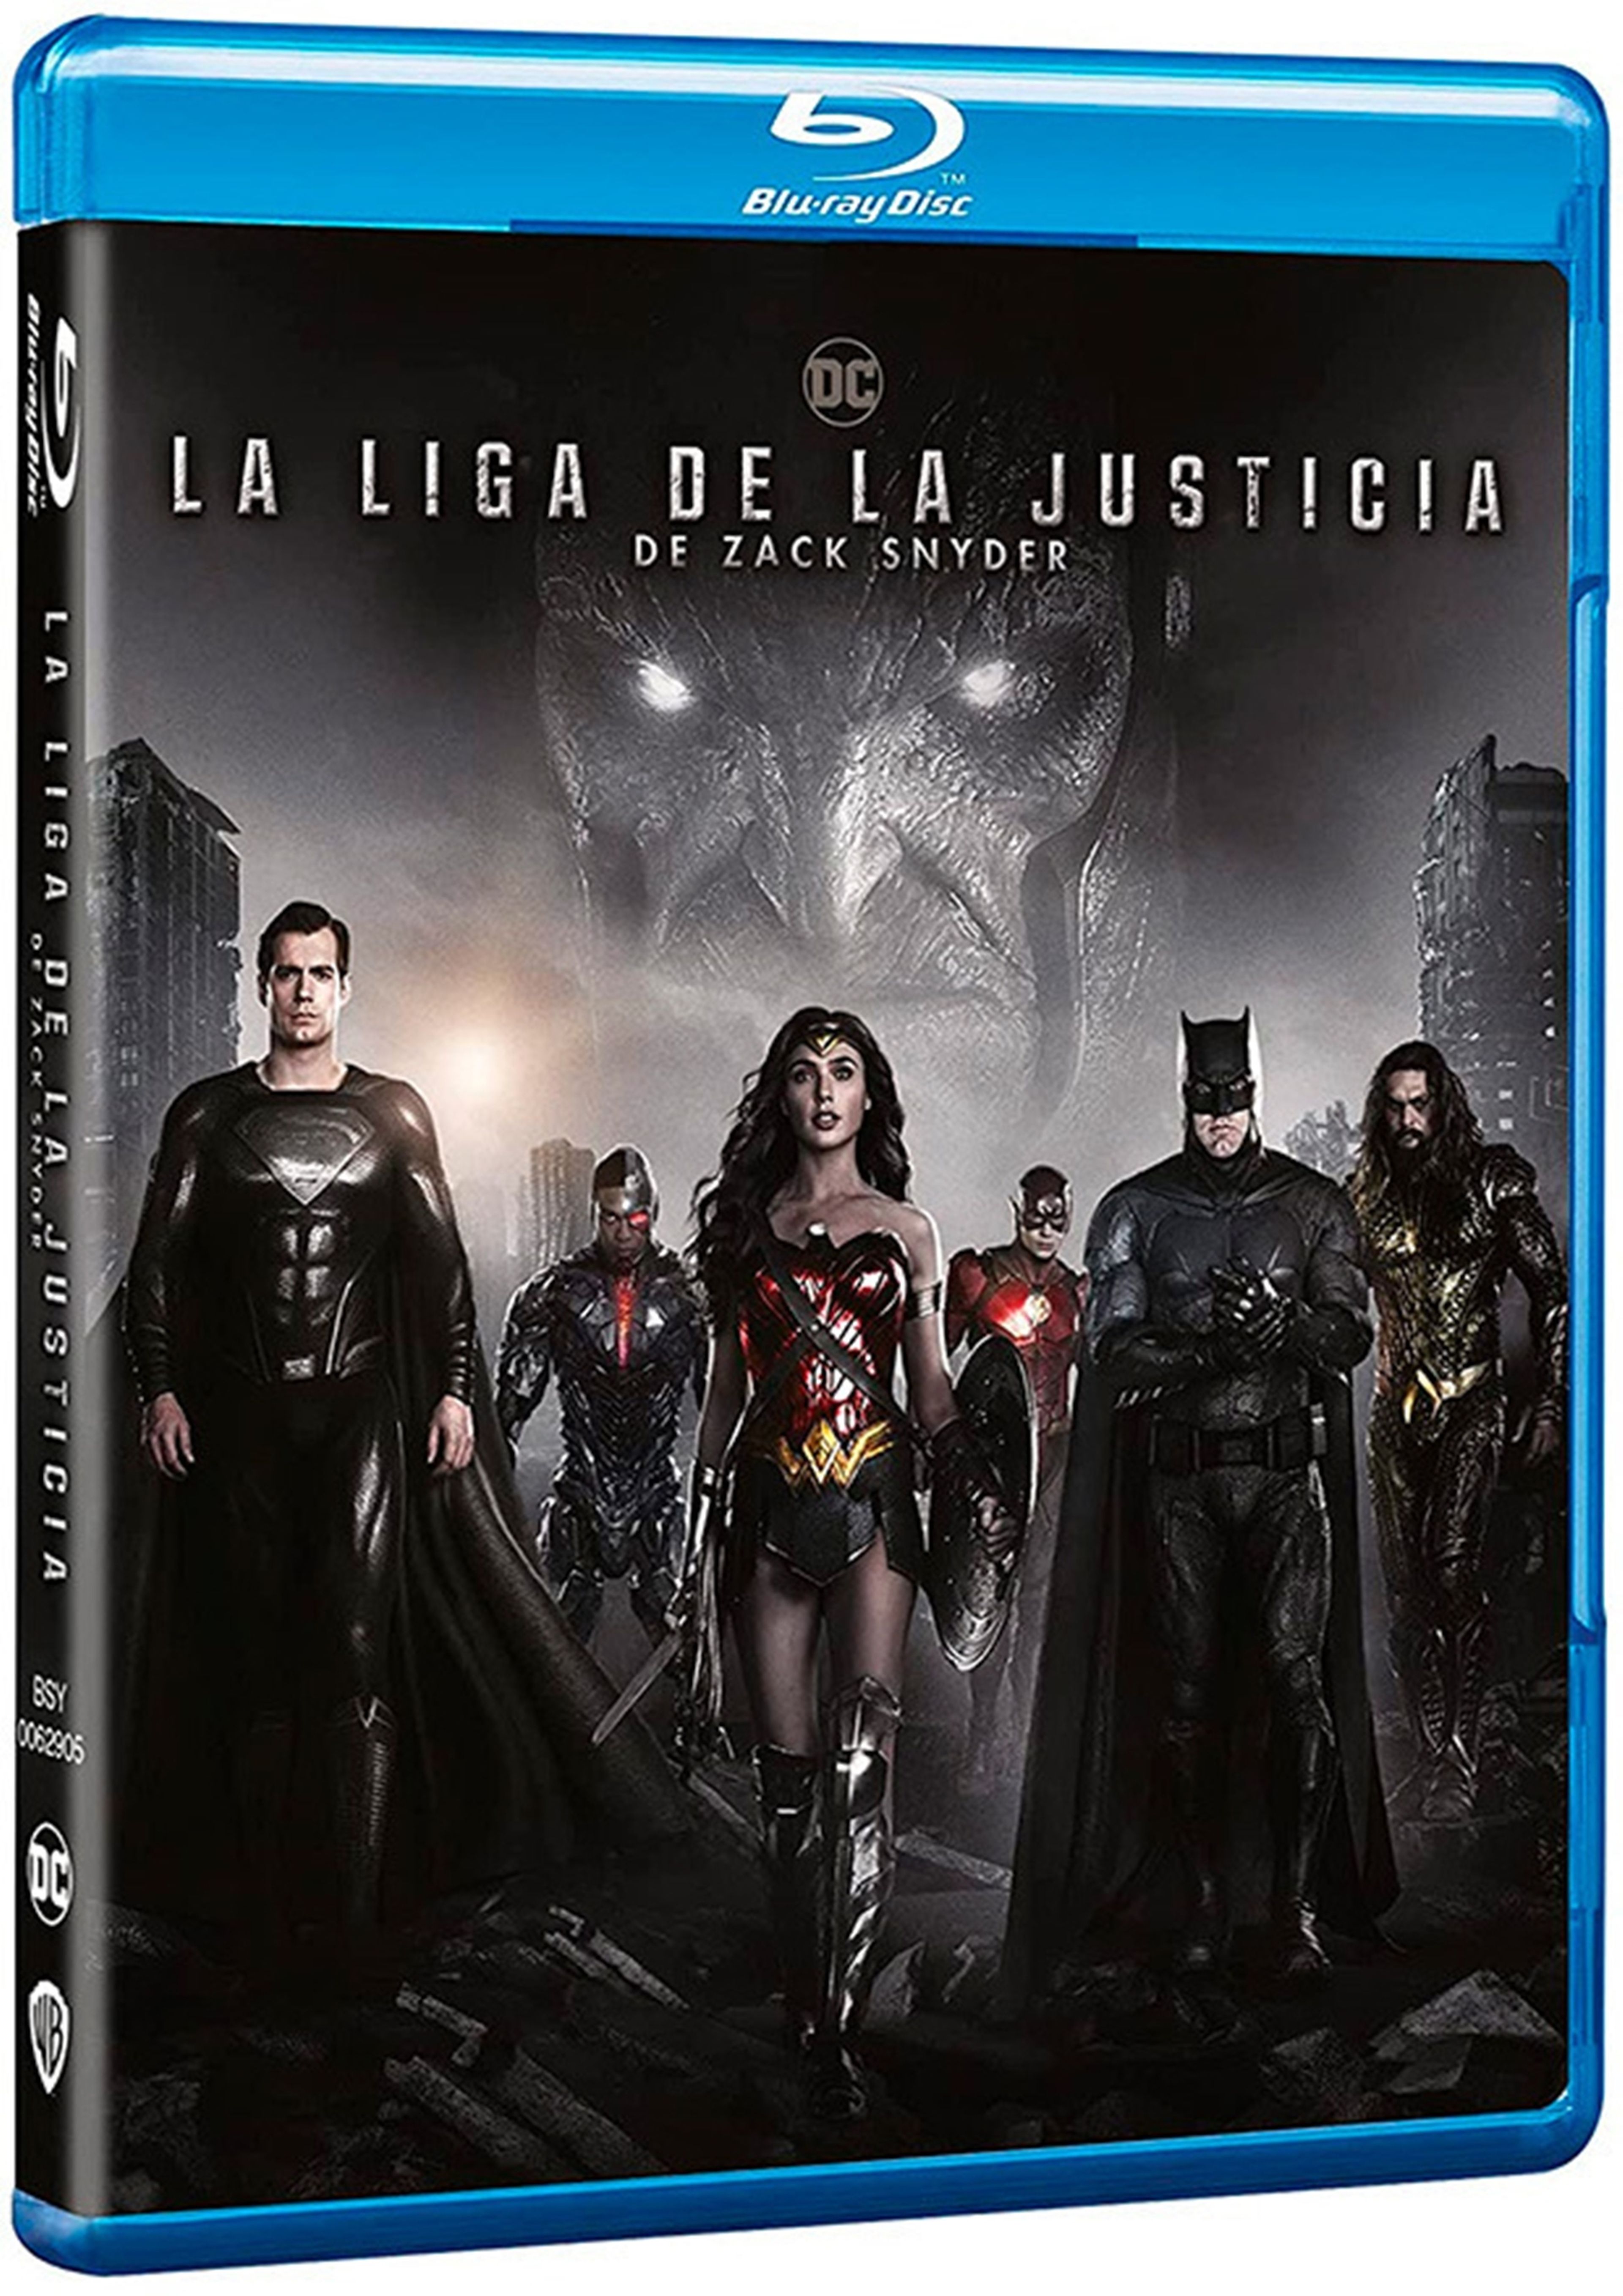 Las ediciones físicas de la película La Liga de la Justicia de Zack Snyder